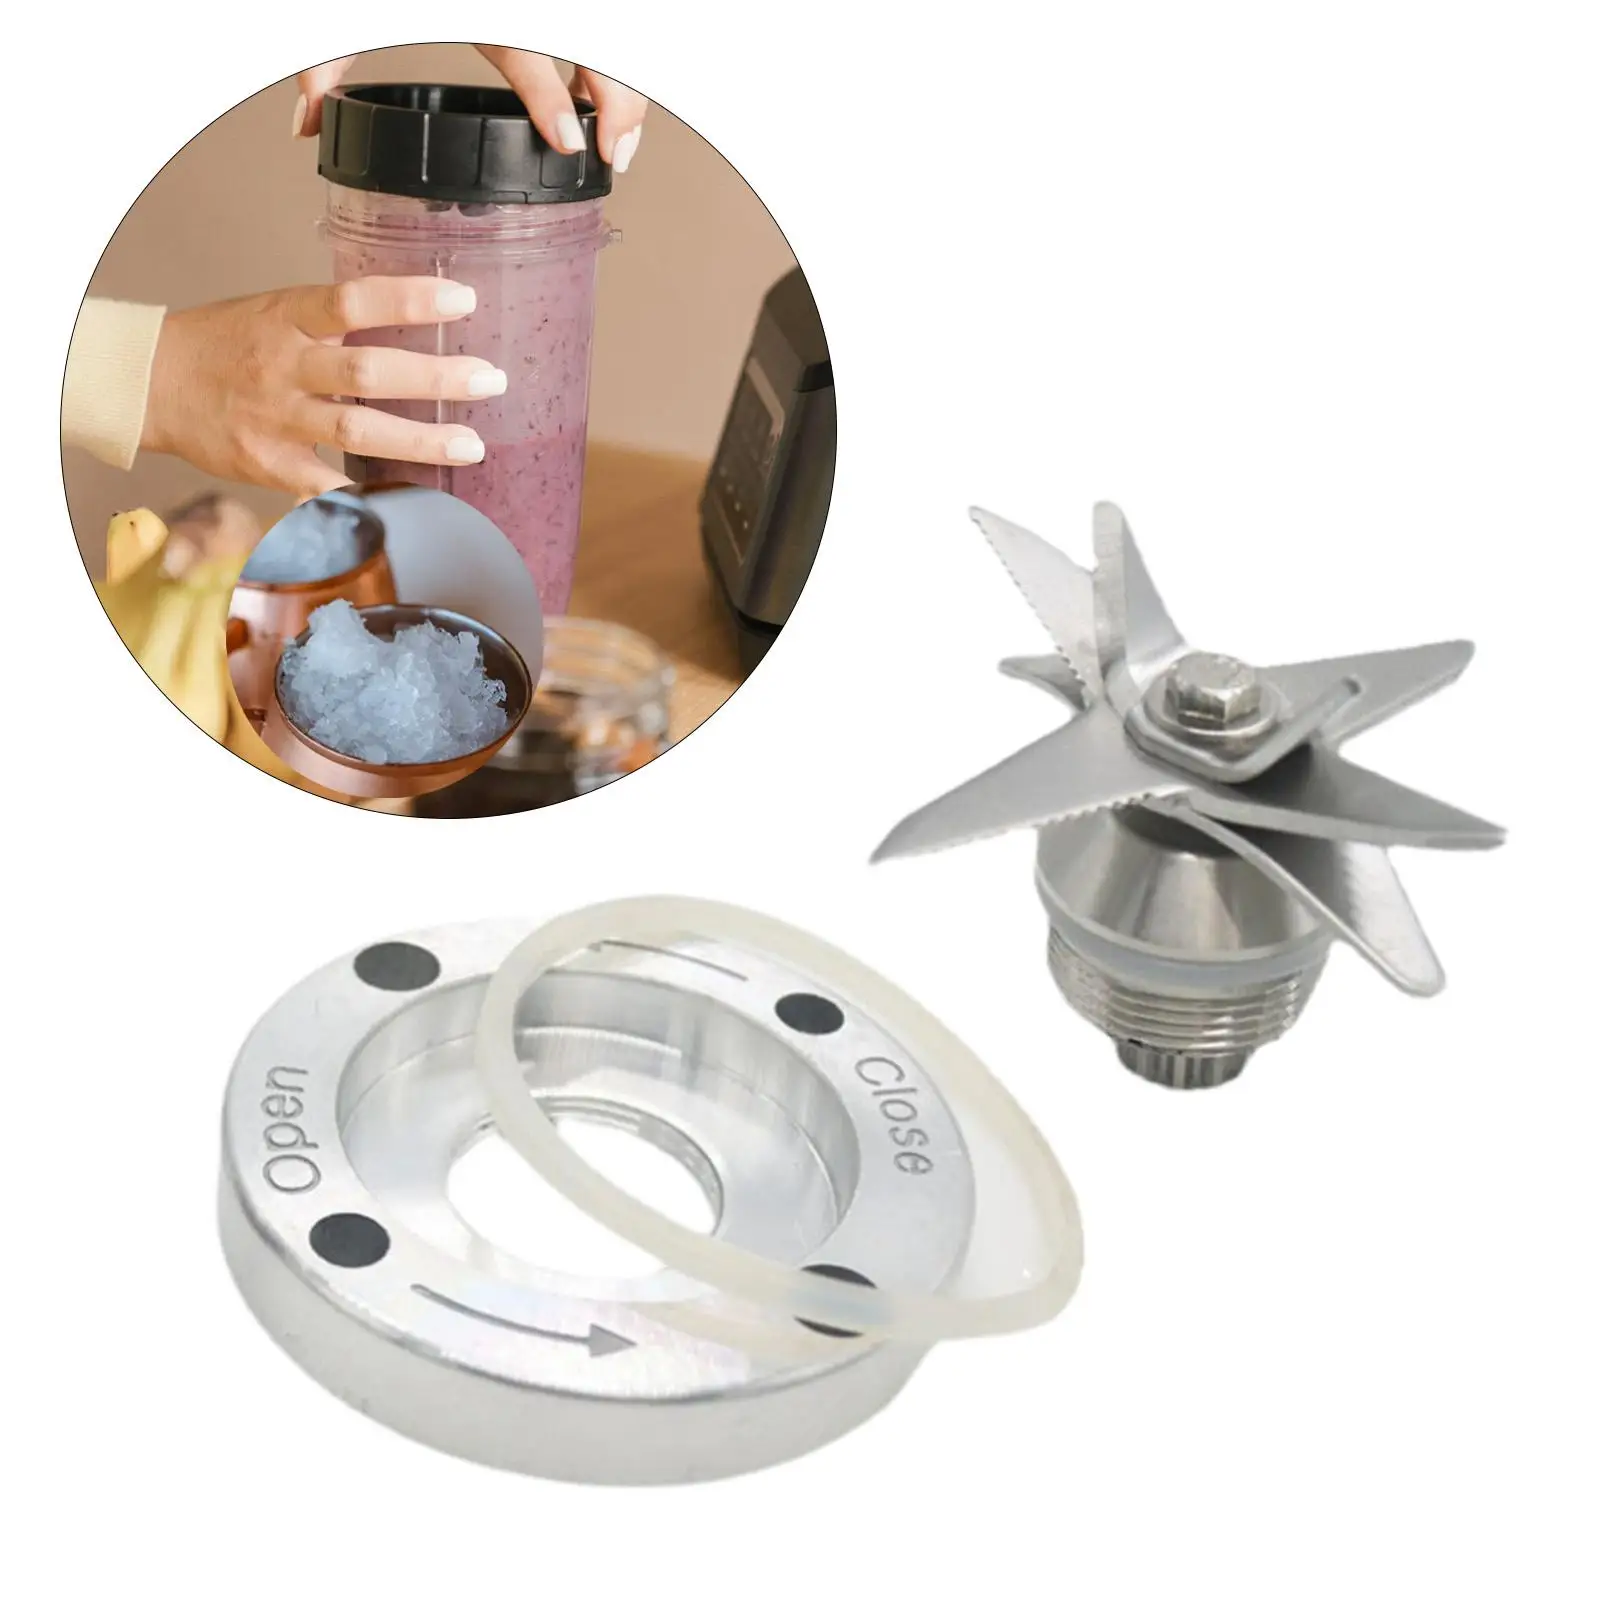 Stainless Steel Blender Tool Kit Spare Kitchen Cooking Tool Juicer Blender Parts Reusable for 2L Jar Blenders Juicer Accessories